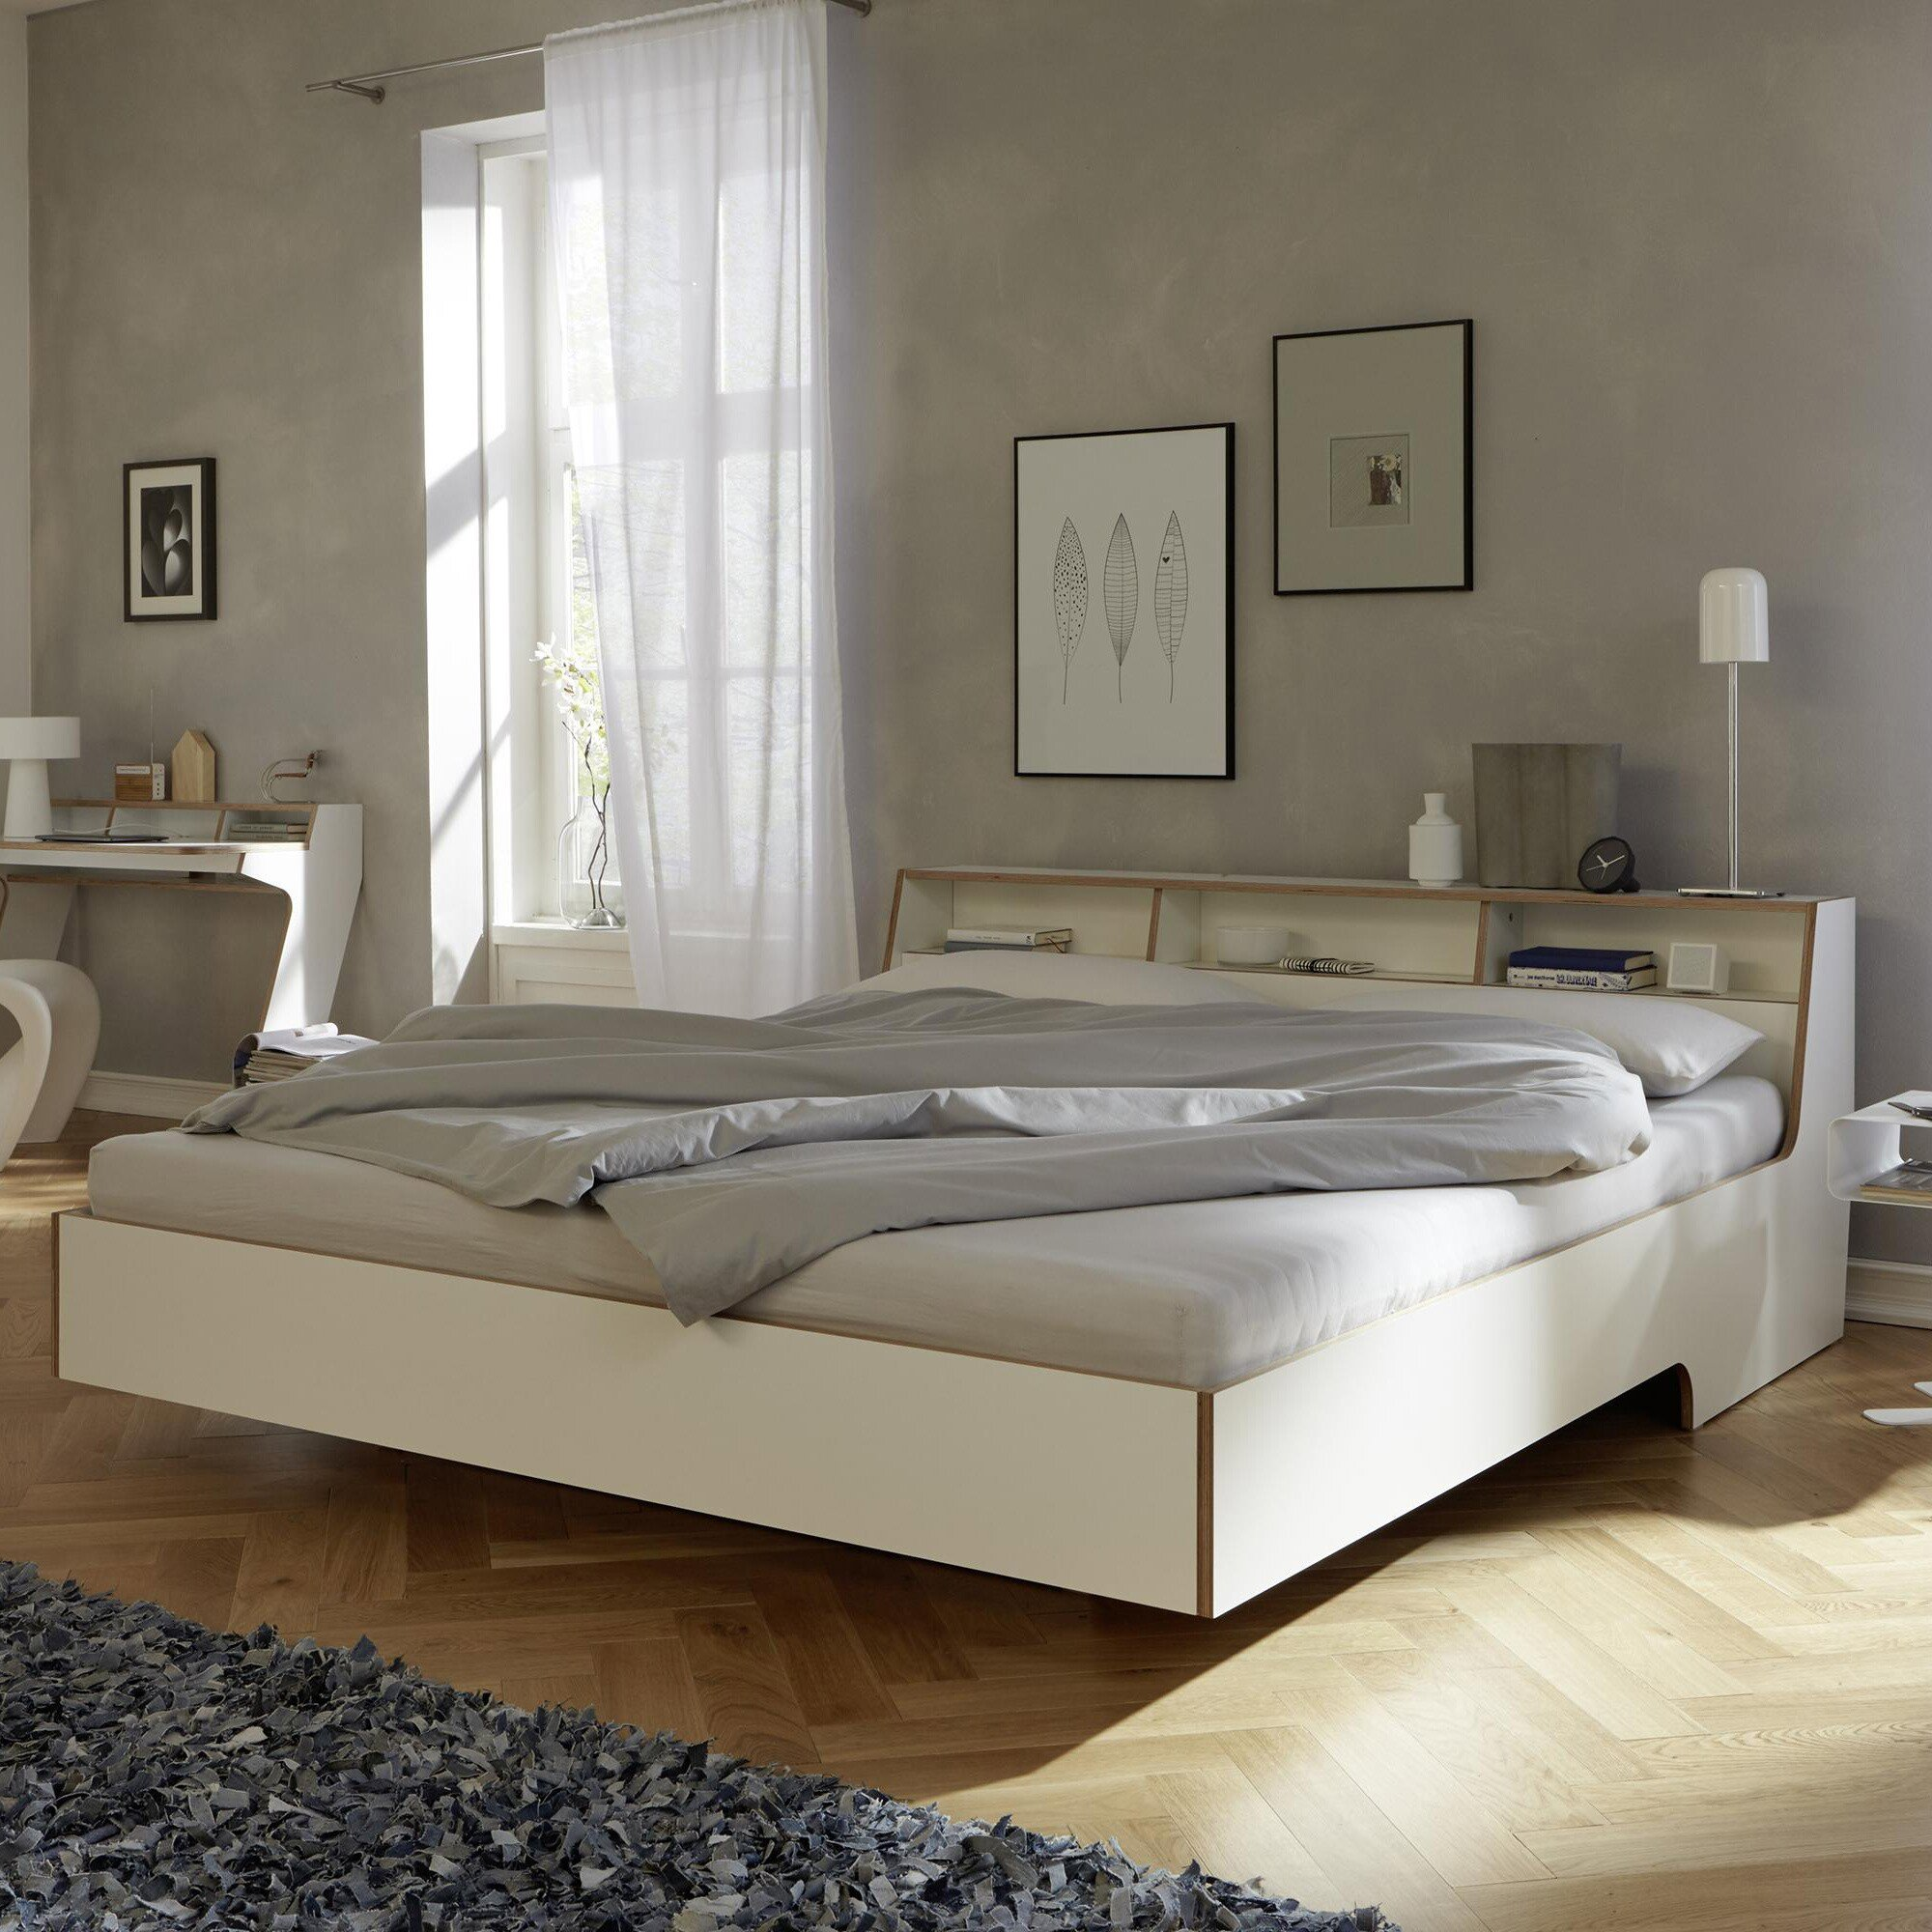 Habitación de dormitorio luminosa con piso de madera cama blanca y dos cuadros colgados sobre el respaldo